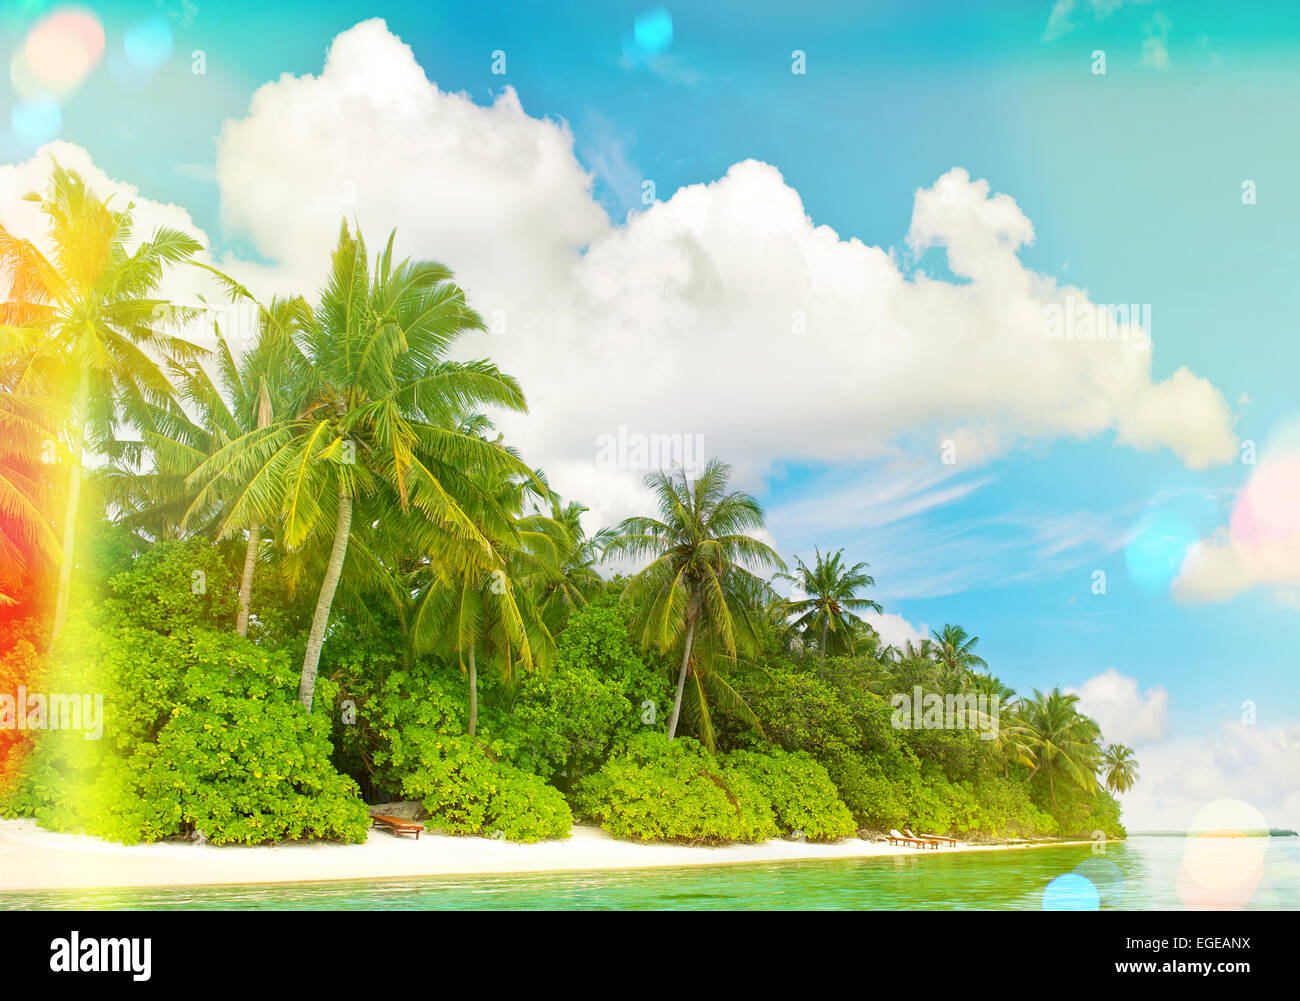 La plage de sable tropicale avec palmiers et ciel bleu ensoleillé. Tons style vintage photo avec la lumière des torches et des fuites Banque D'Images